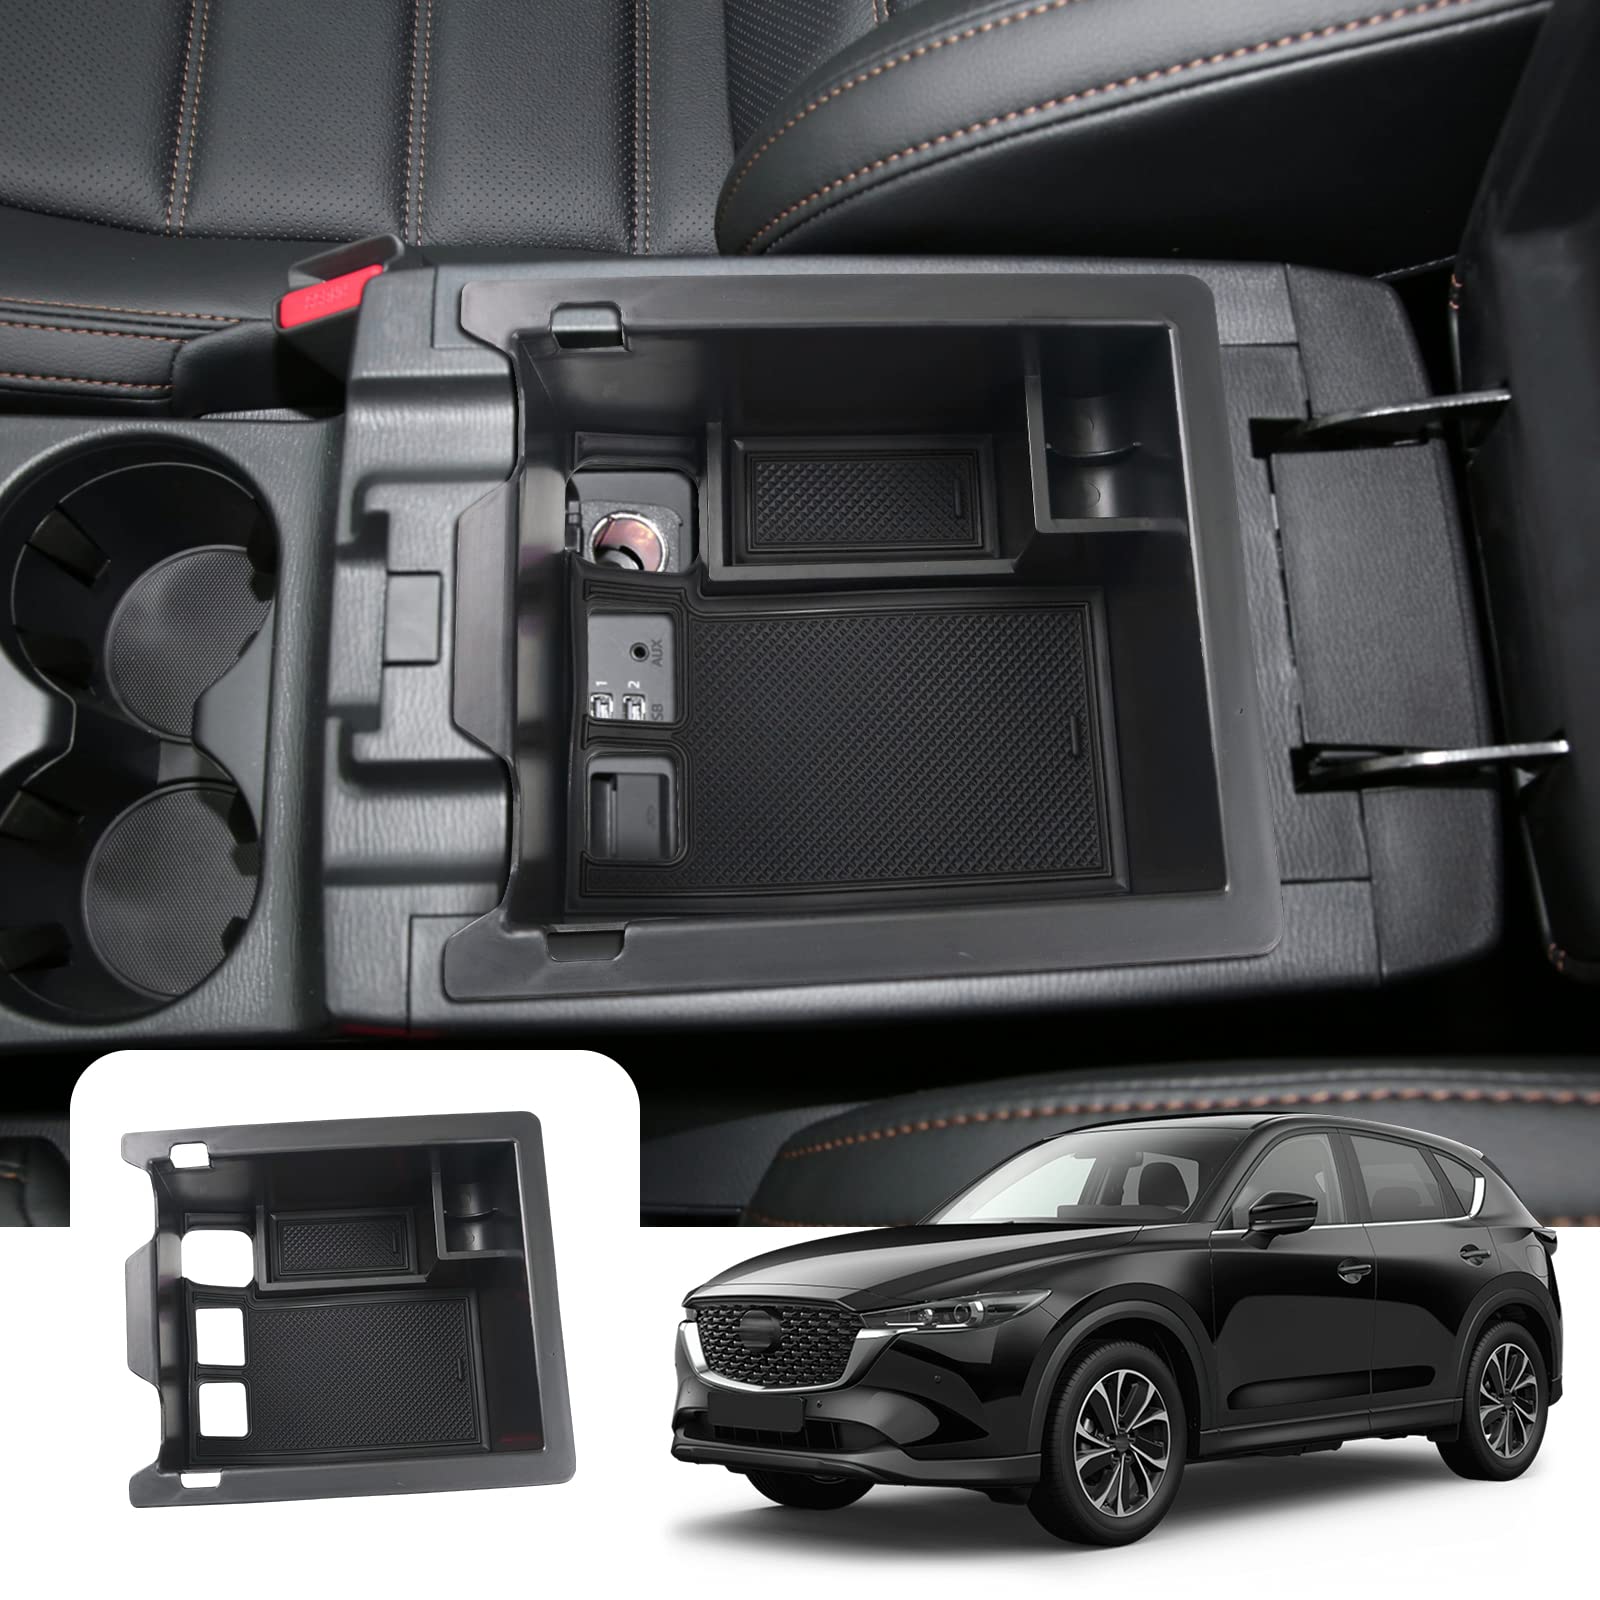 Mazda CX-5 Center Armrest Storage Tray 2017+ - LFOTPP Car Accessories